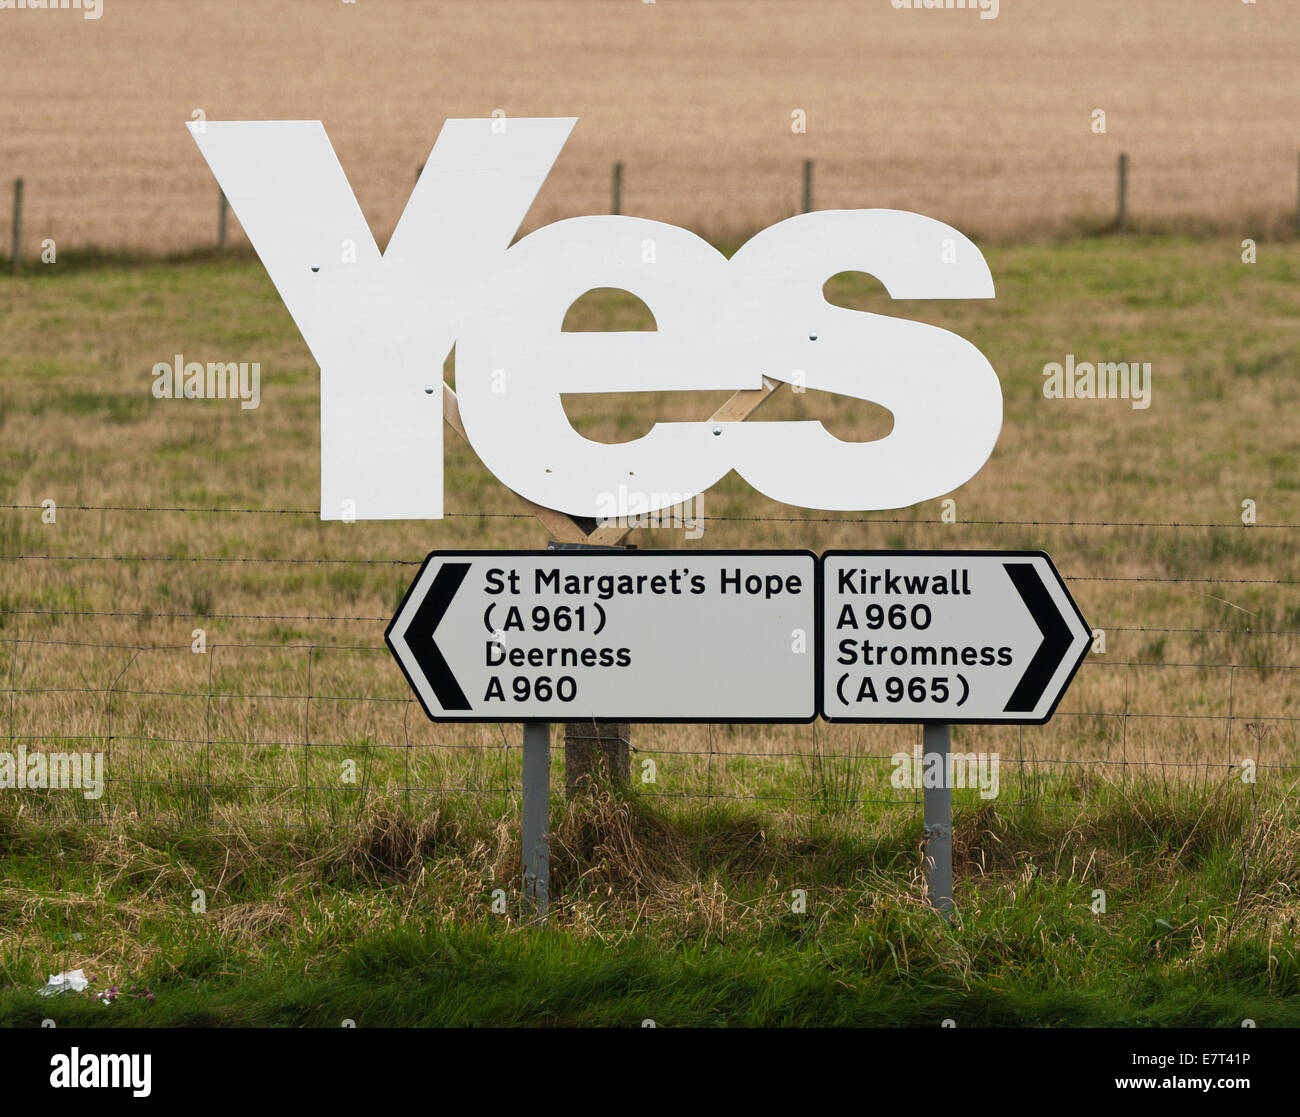 'Oui' à partir de la campagne pour l'indépendance écossaise, monté au-dessus de panneaux indiquant les principales villes d'Orkney Banque D'Images